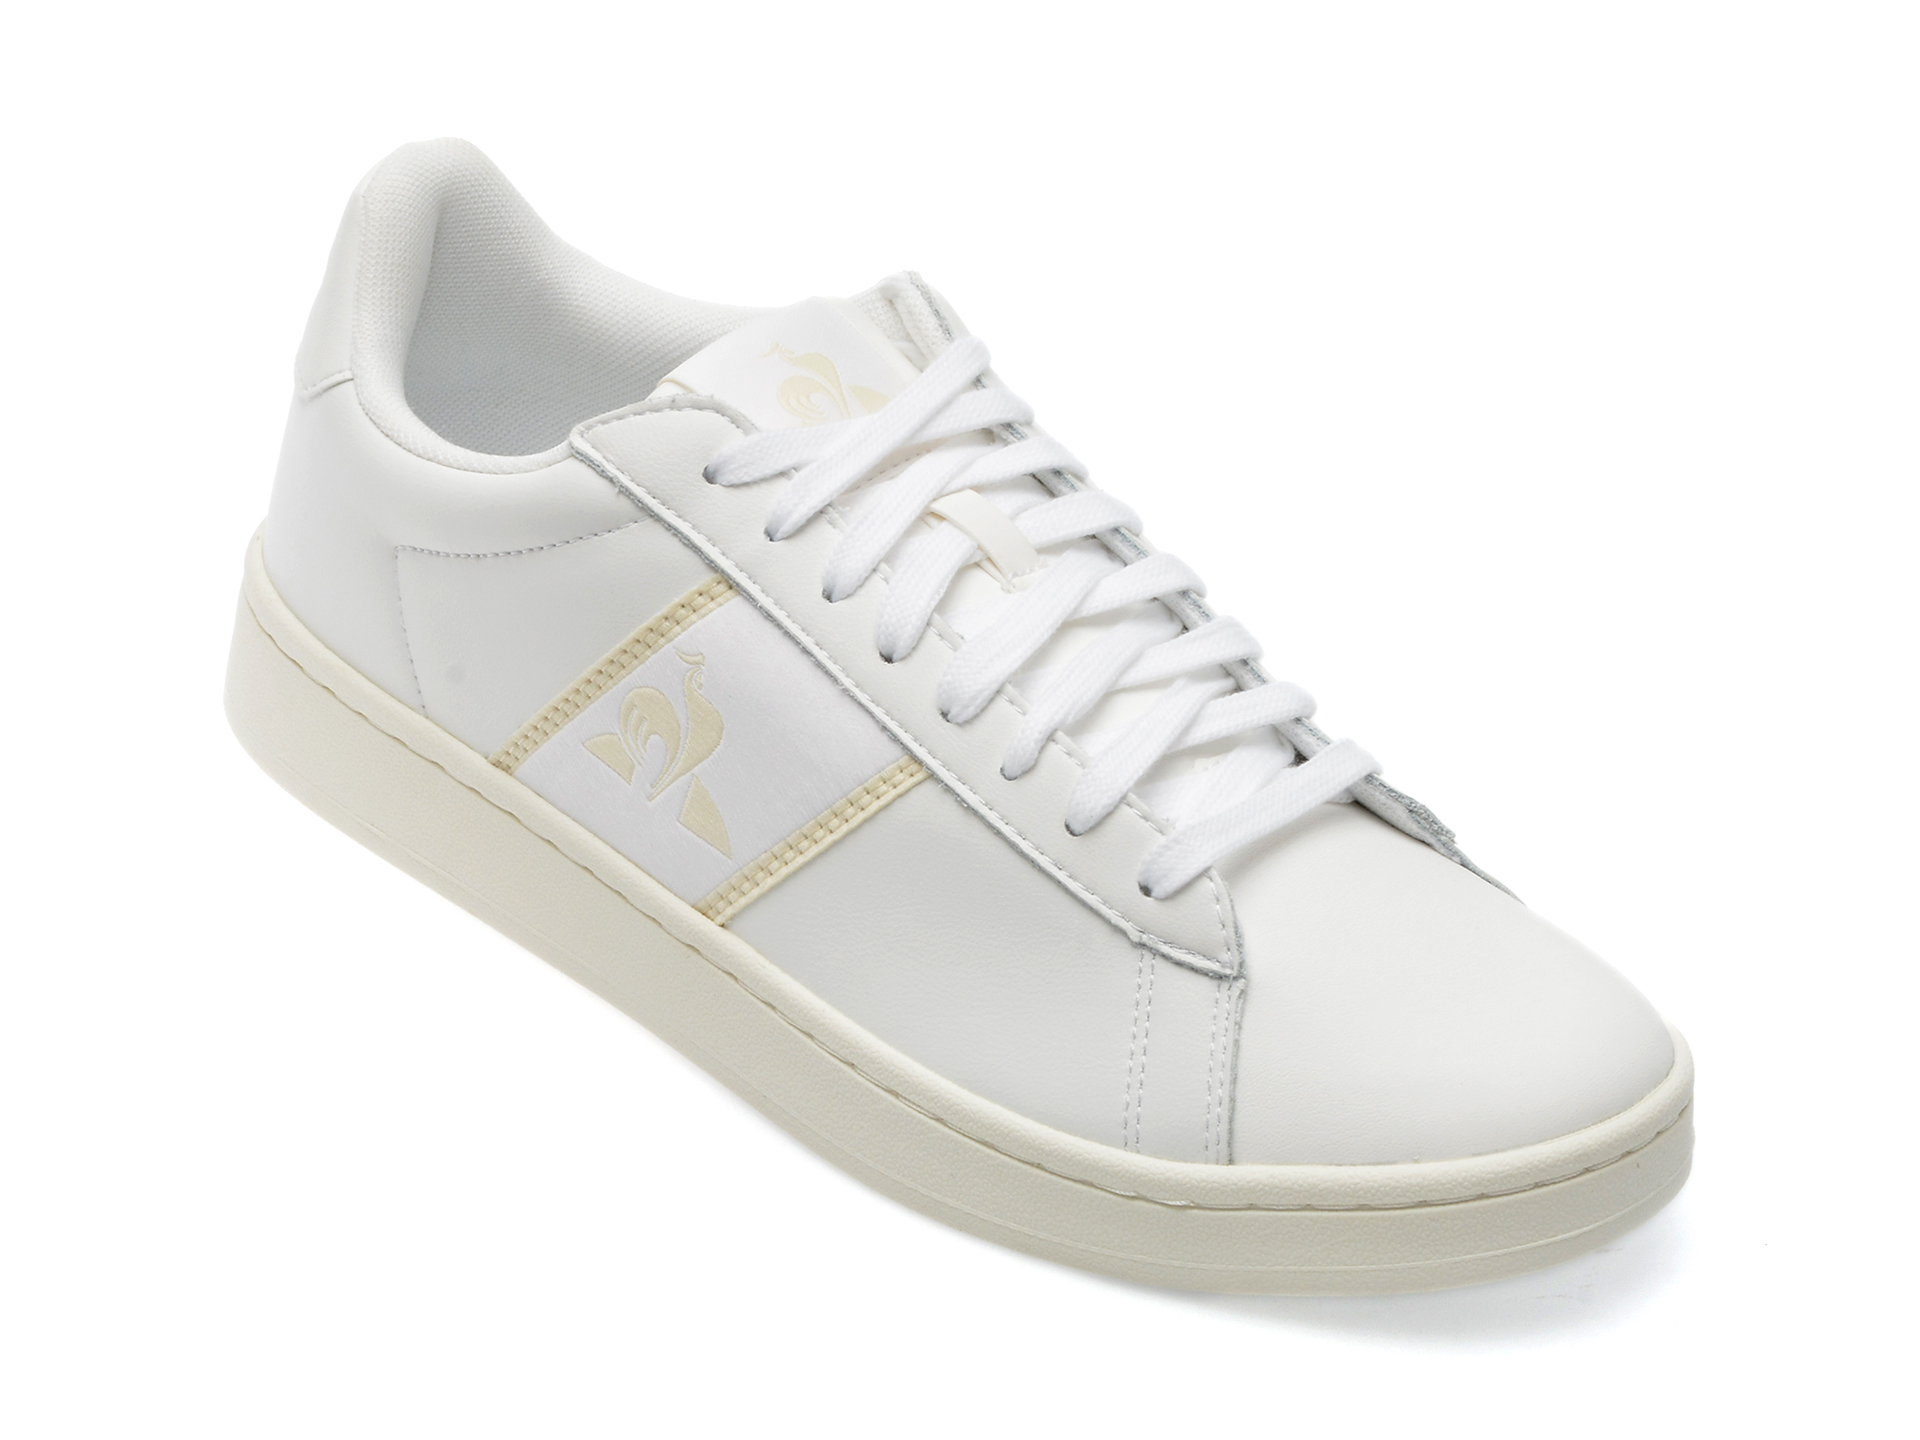 Pantofi LE COQ SPORTIF albi, 2310161, din piele naturala